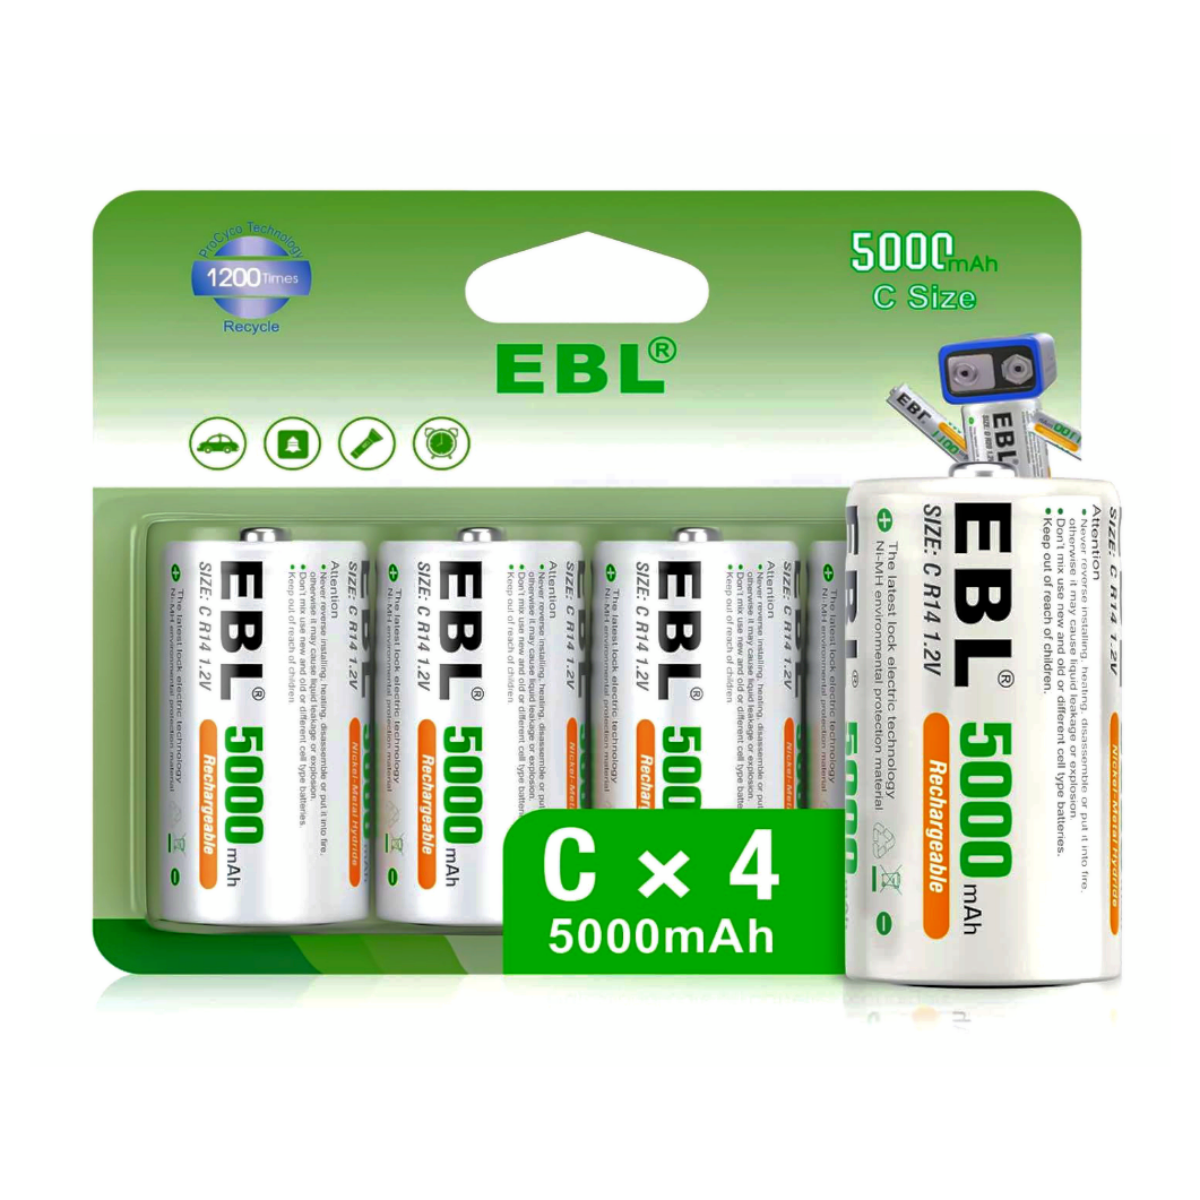 EBL Rechargeable C batteries